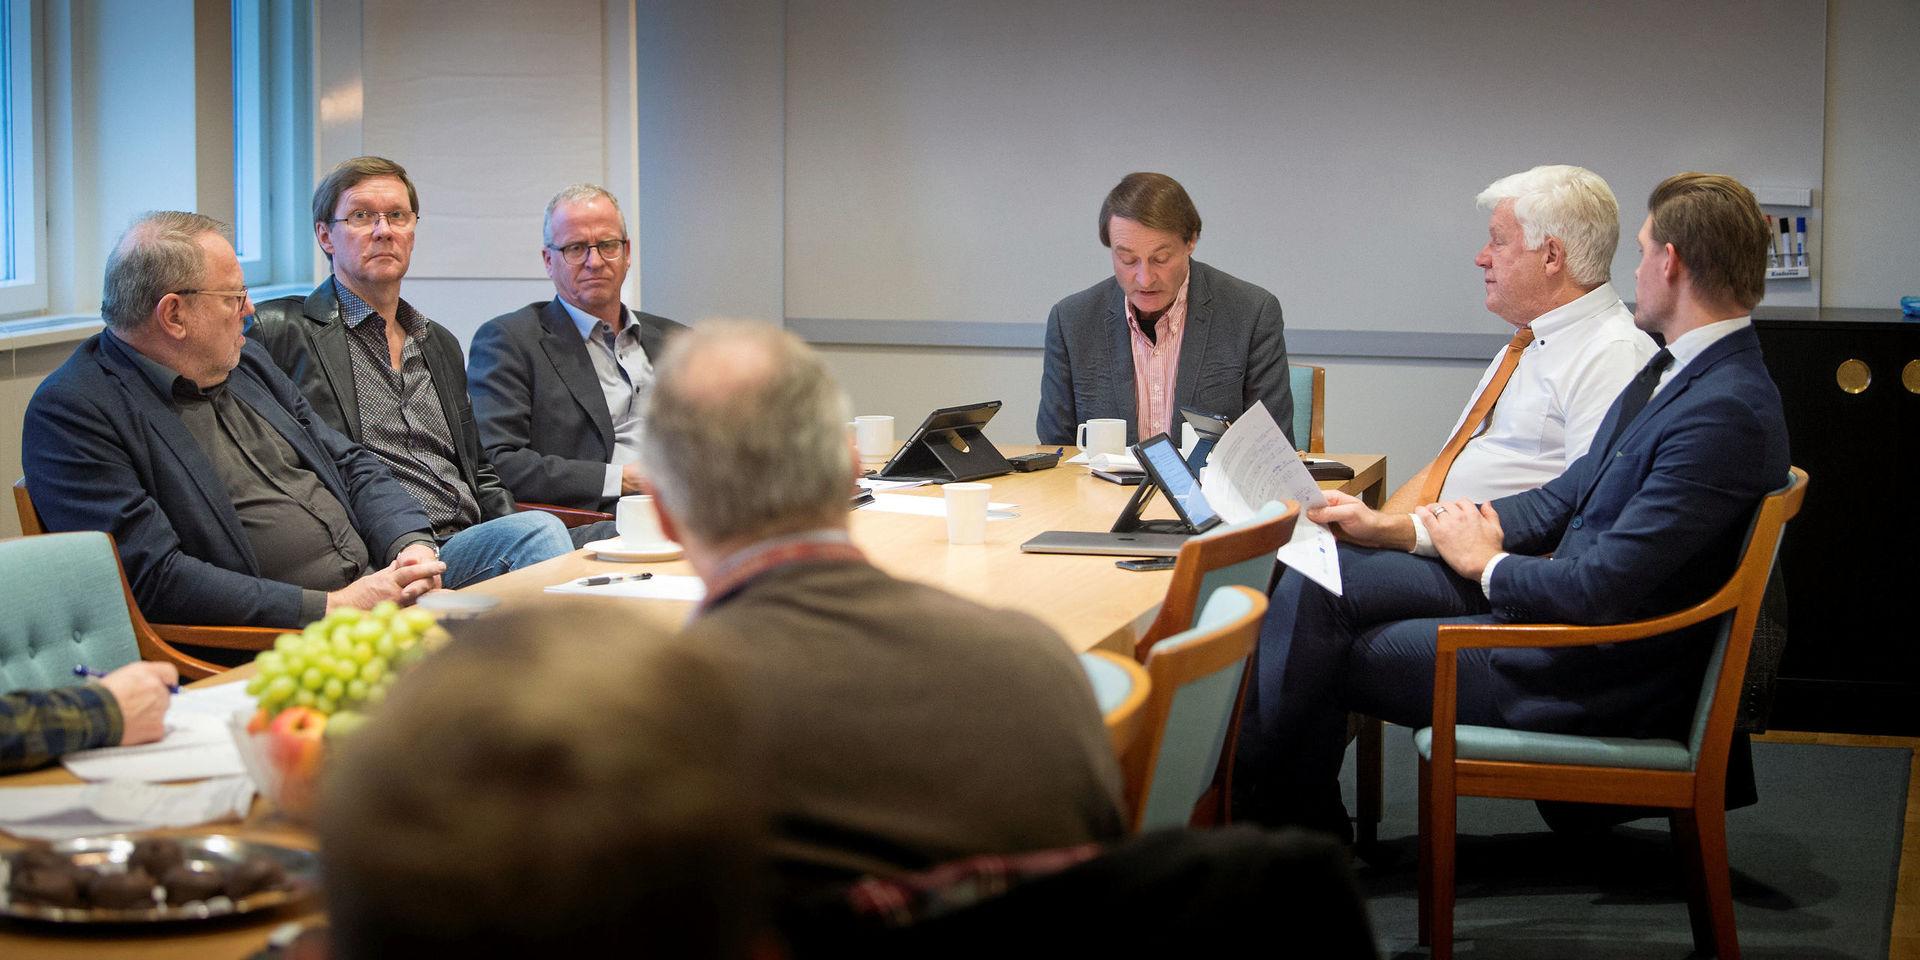 Utökar. Den nya samverkansmajoriteten fick igenom förslaget att utöka antalet politiker i Uddevalla. Från vänster: Elving Andersson (C), Jarmo Uusitalo (MP), Christer Hasslebäck (UP), Mikael Staxäng (M), Rolf Jonsson (L) och Jonas Sandwall (KD).